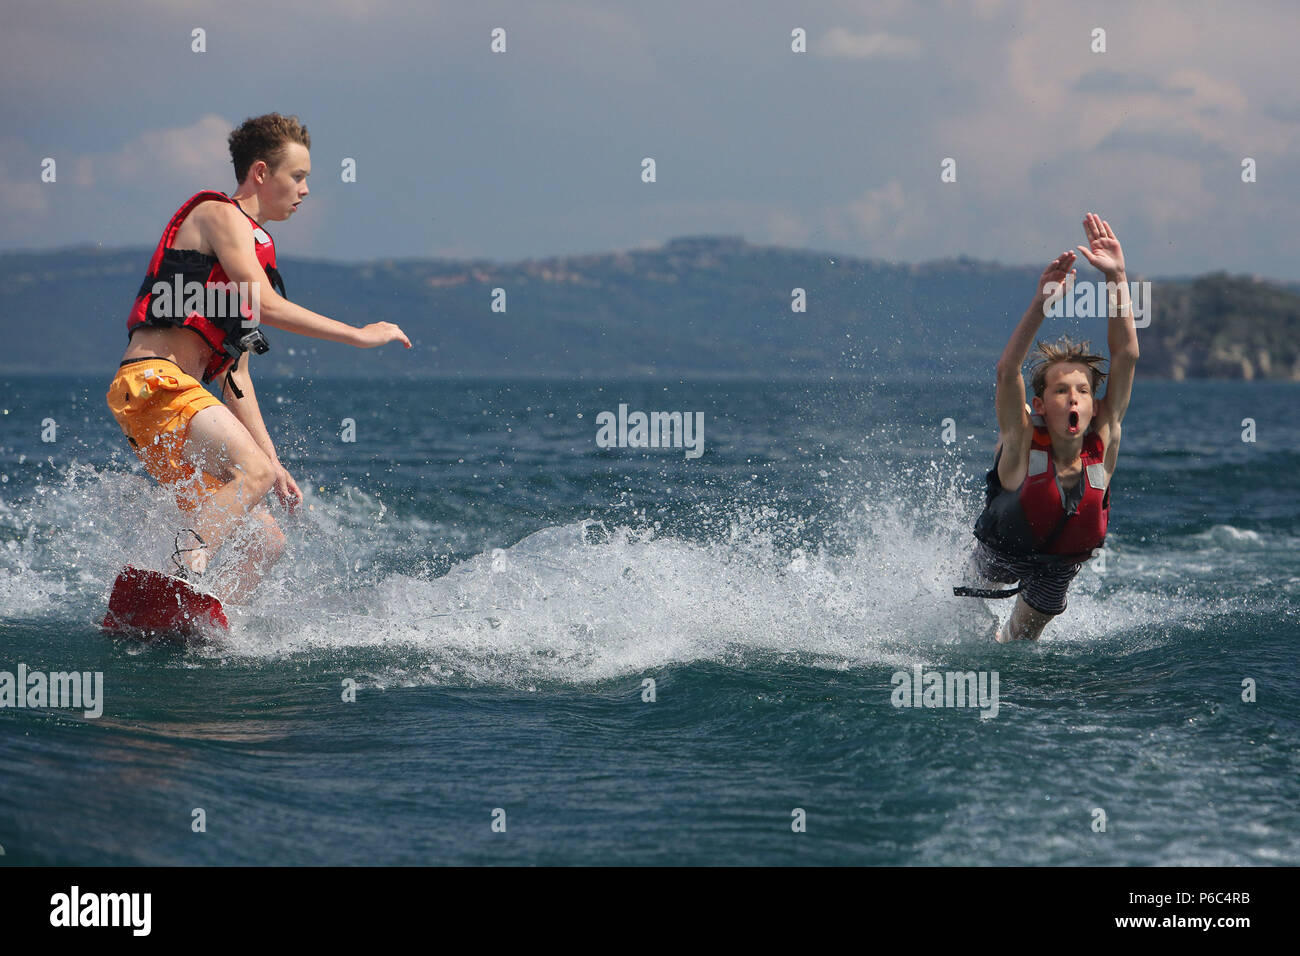 Capodimonte, Italy, boys fall into the water while skiing on Lake Bolsena Stock Photo